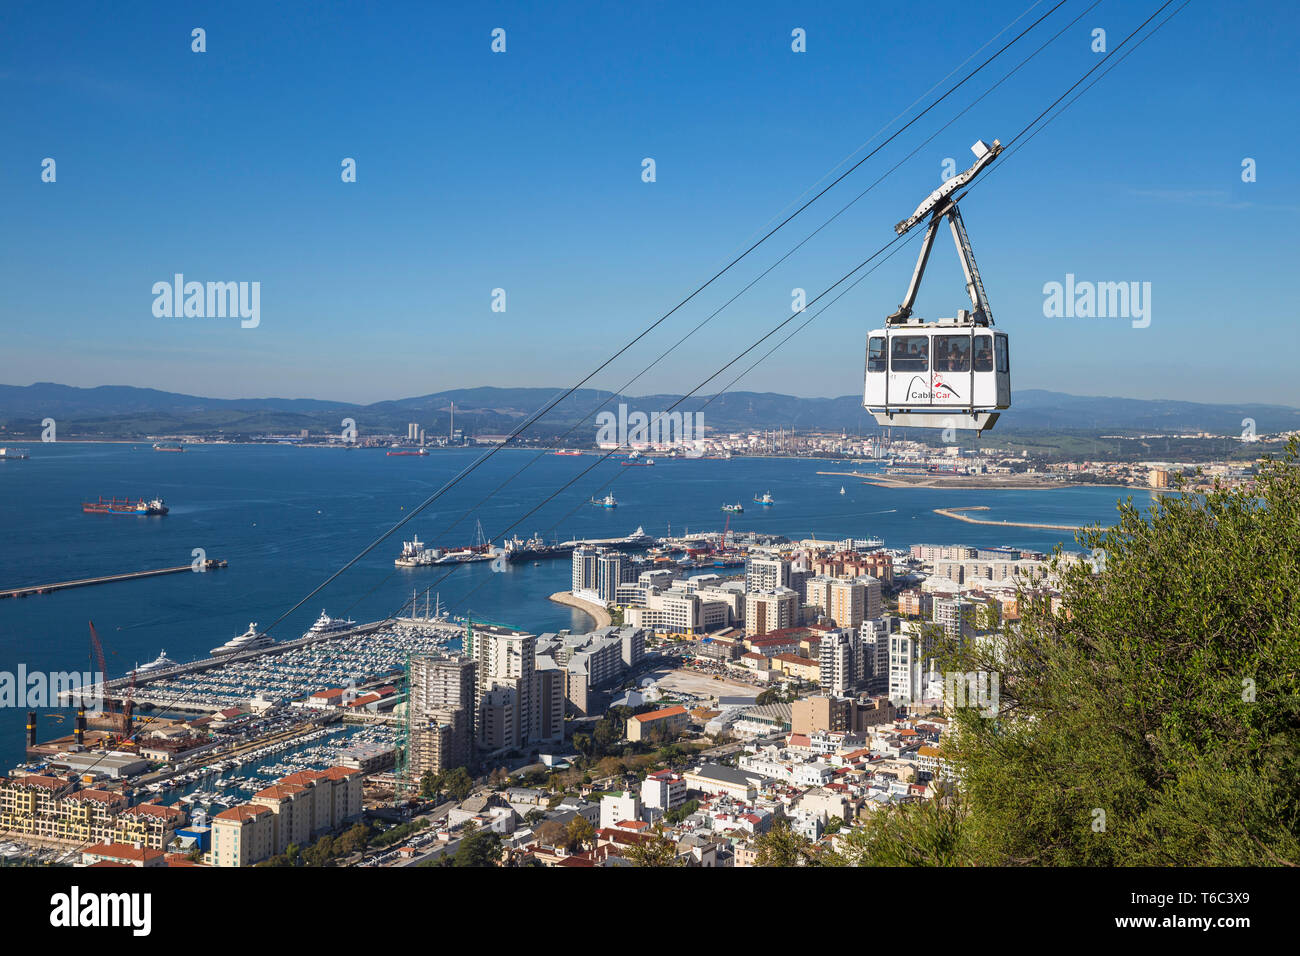 Gibraltar, Rock of Gibraltar, Cable car Stock Photo